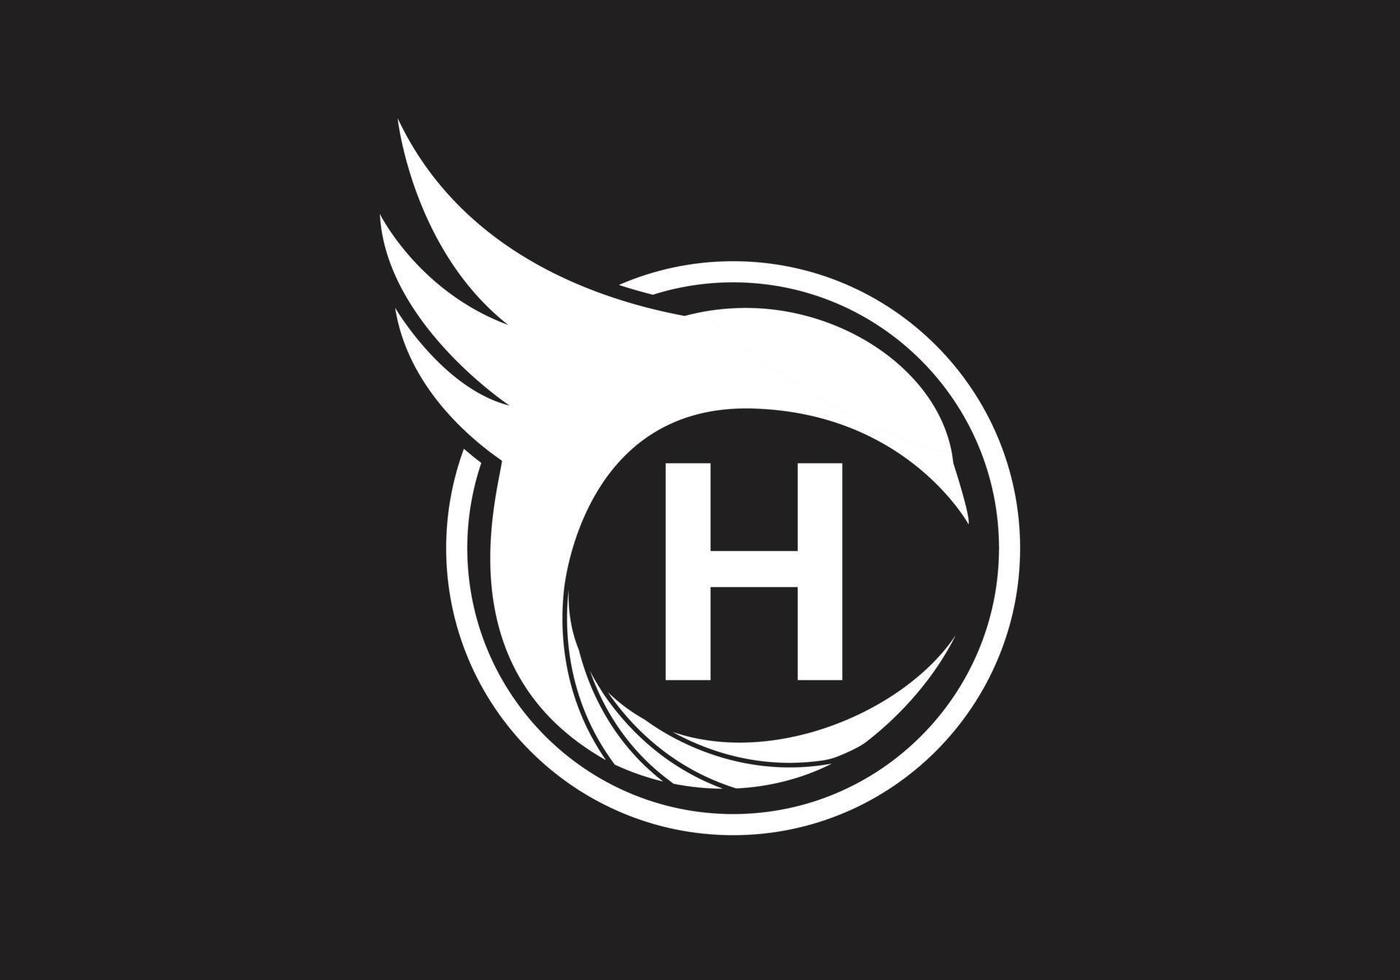 este es un logotipo de letra h creativa vector